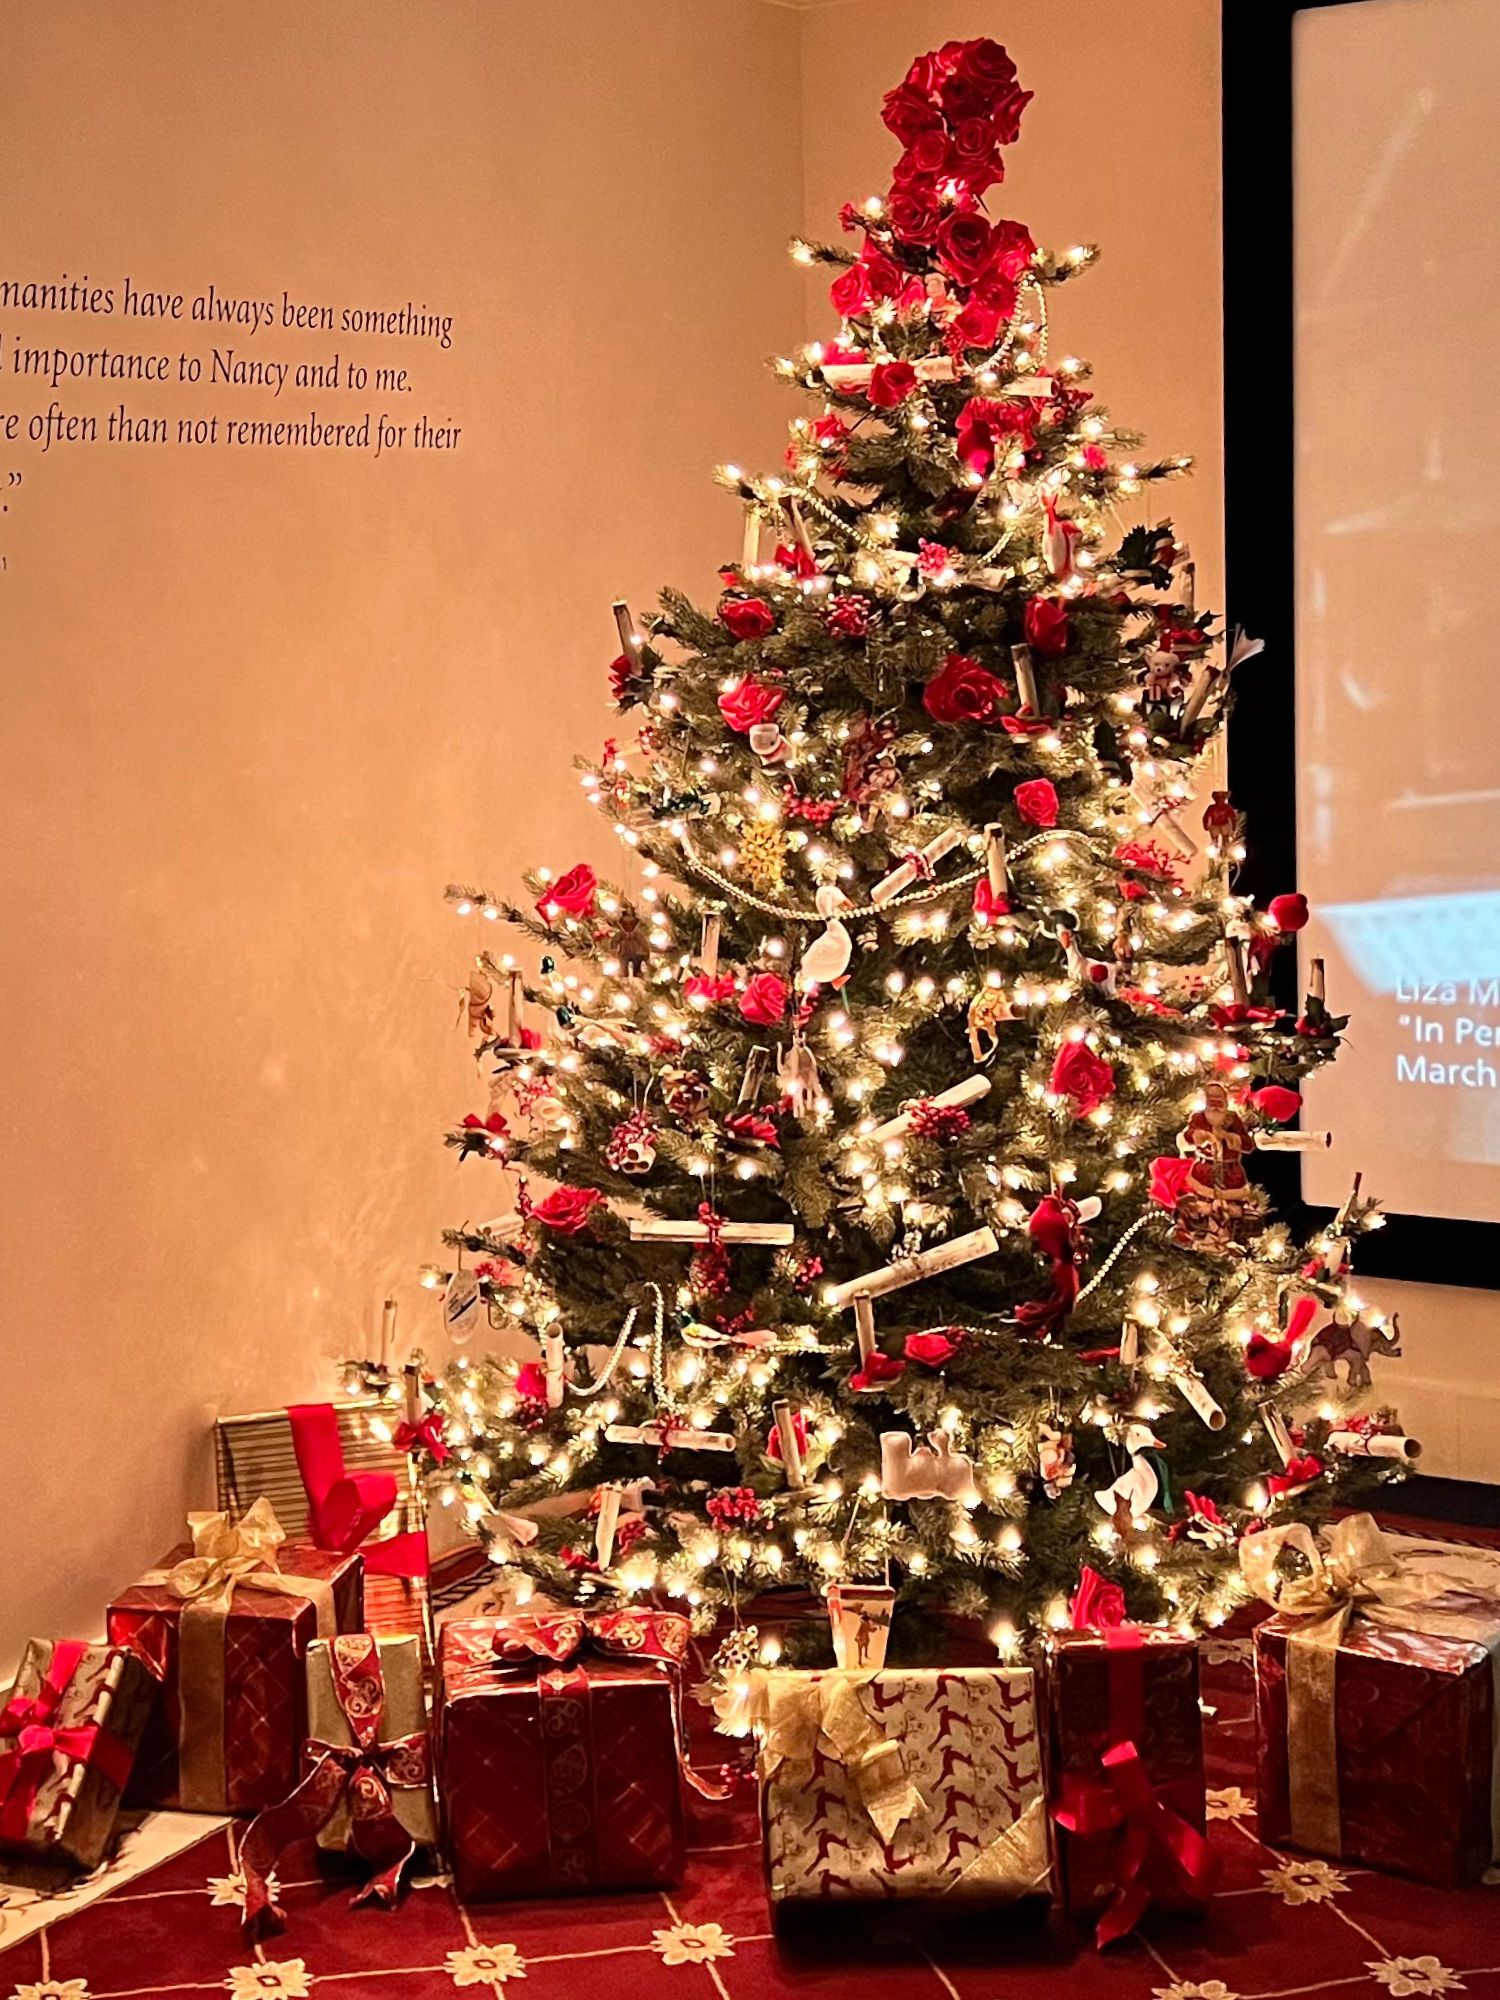 Reagan's White House Christmas Tree